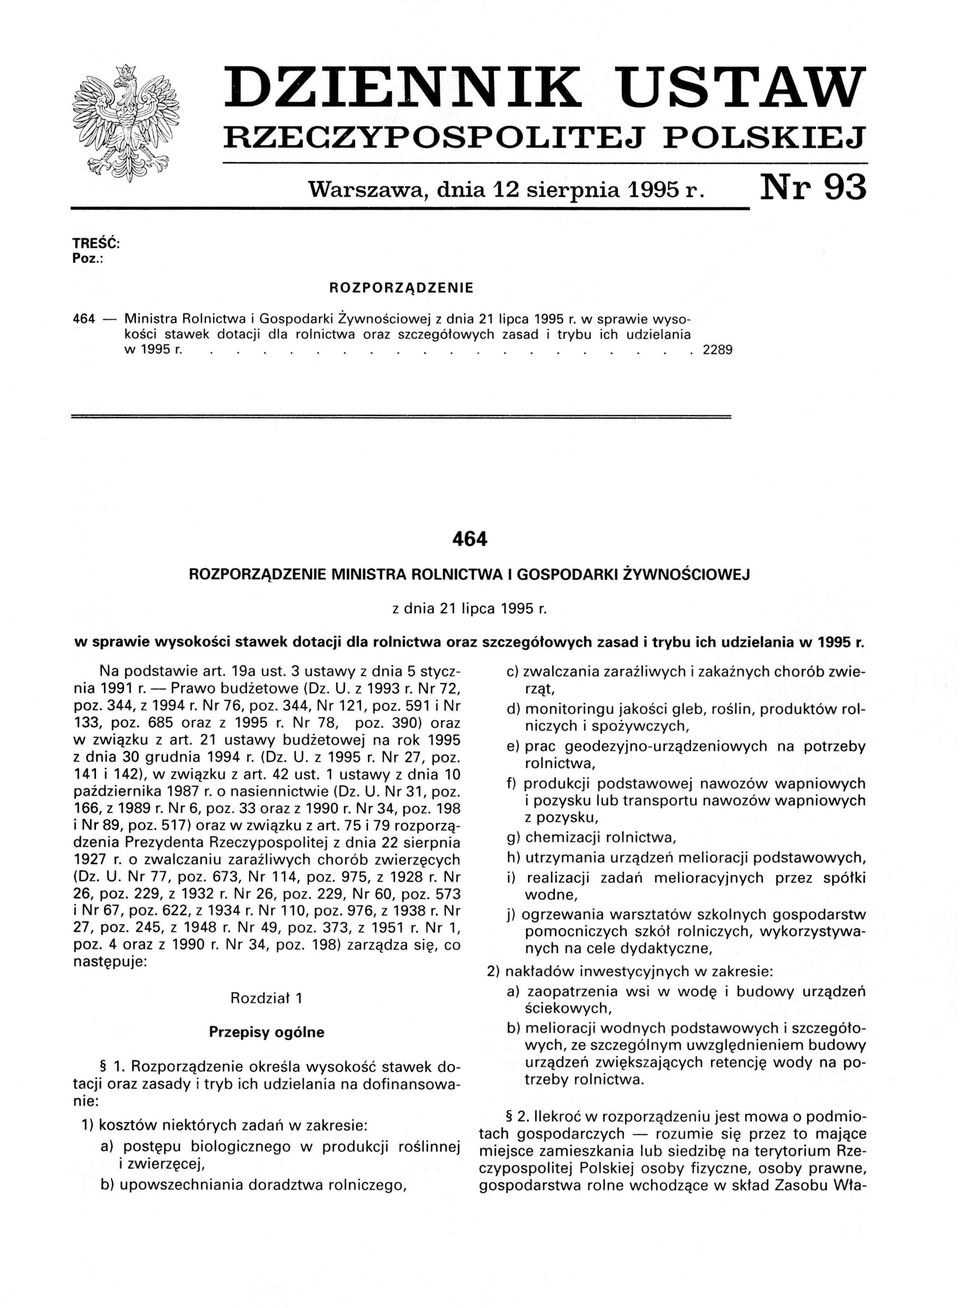 w sprawie wysokości stawek dotacji dla rolnictwa oraz szczegółowych zasad i trybu ich udzielania w 1995 r. Na podstawie art. 19a ust. 3 ustawy z dnia 5 stycznia 1991 r. - Prawo budżetowe (Dz. U.